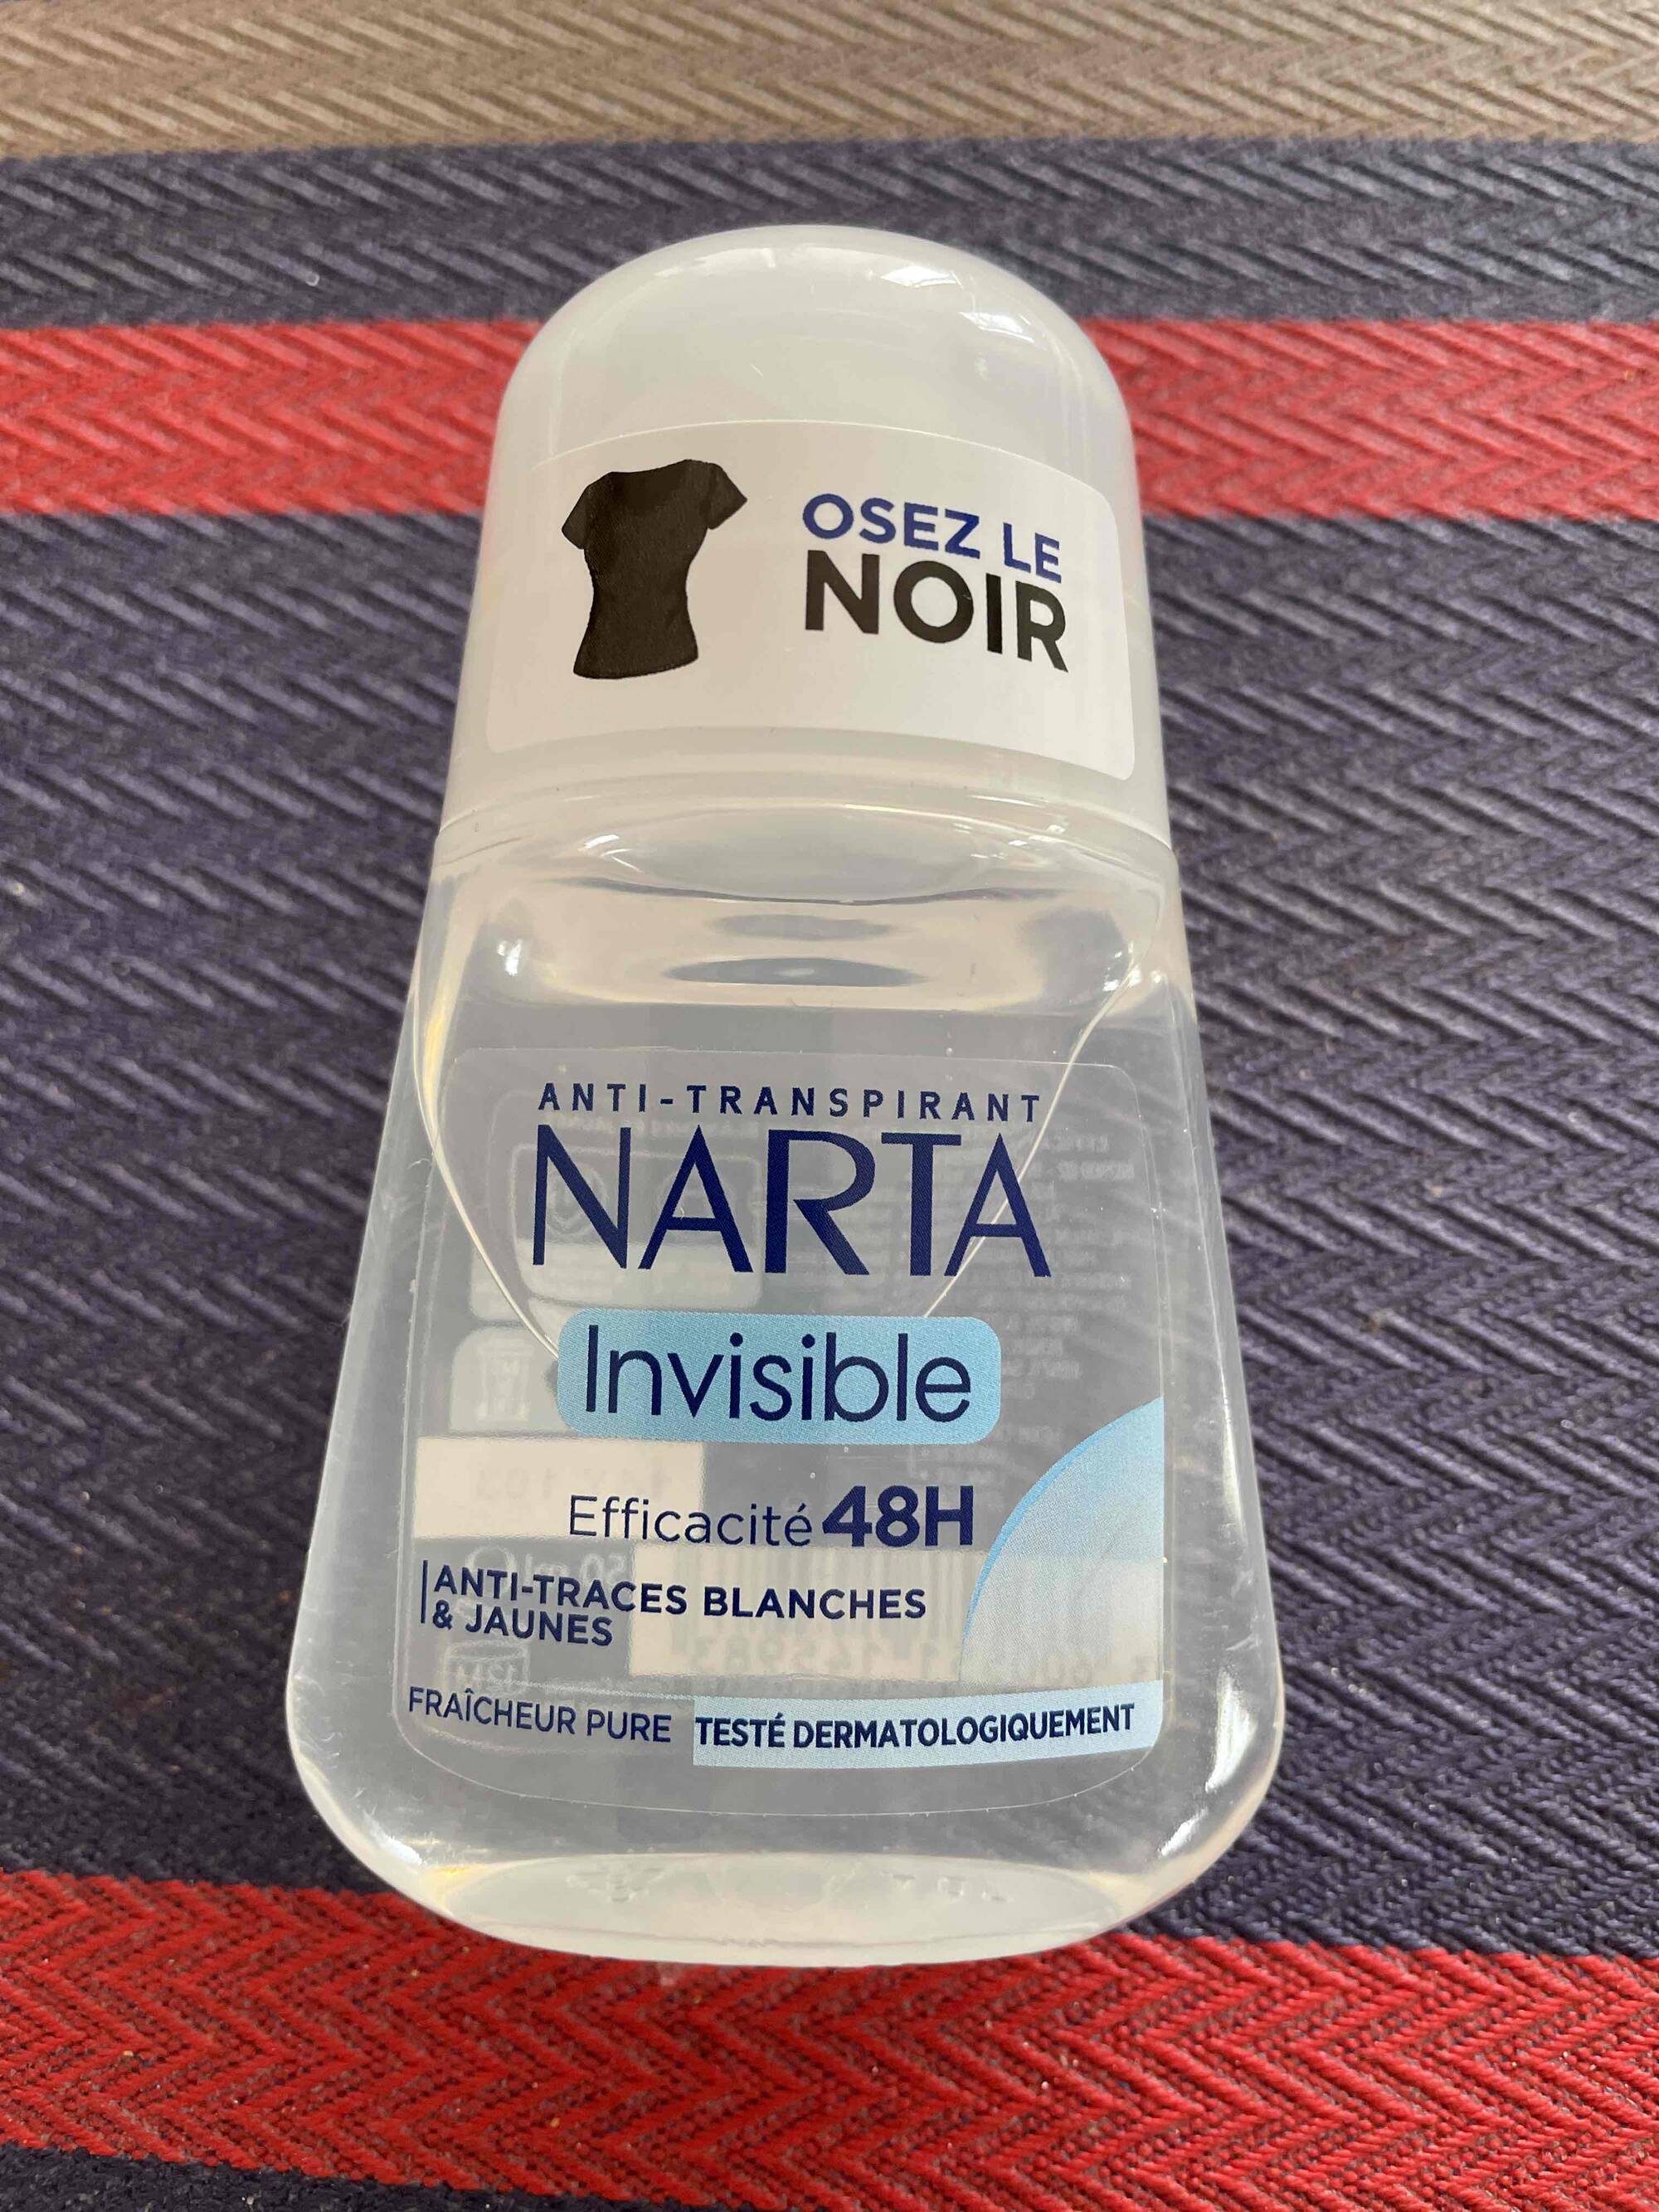 NARTA - Anti-transpirant invisible 48h